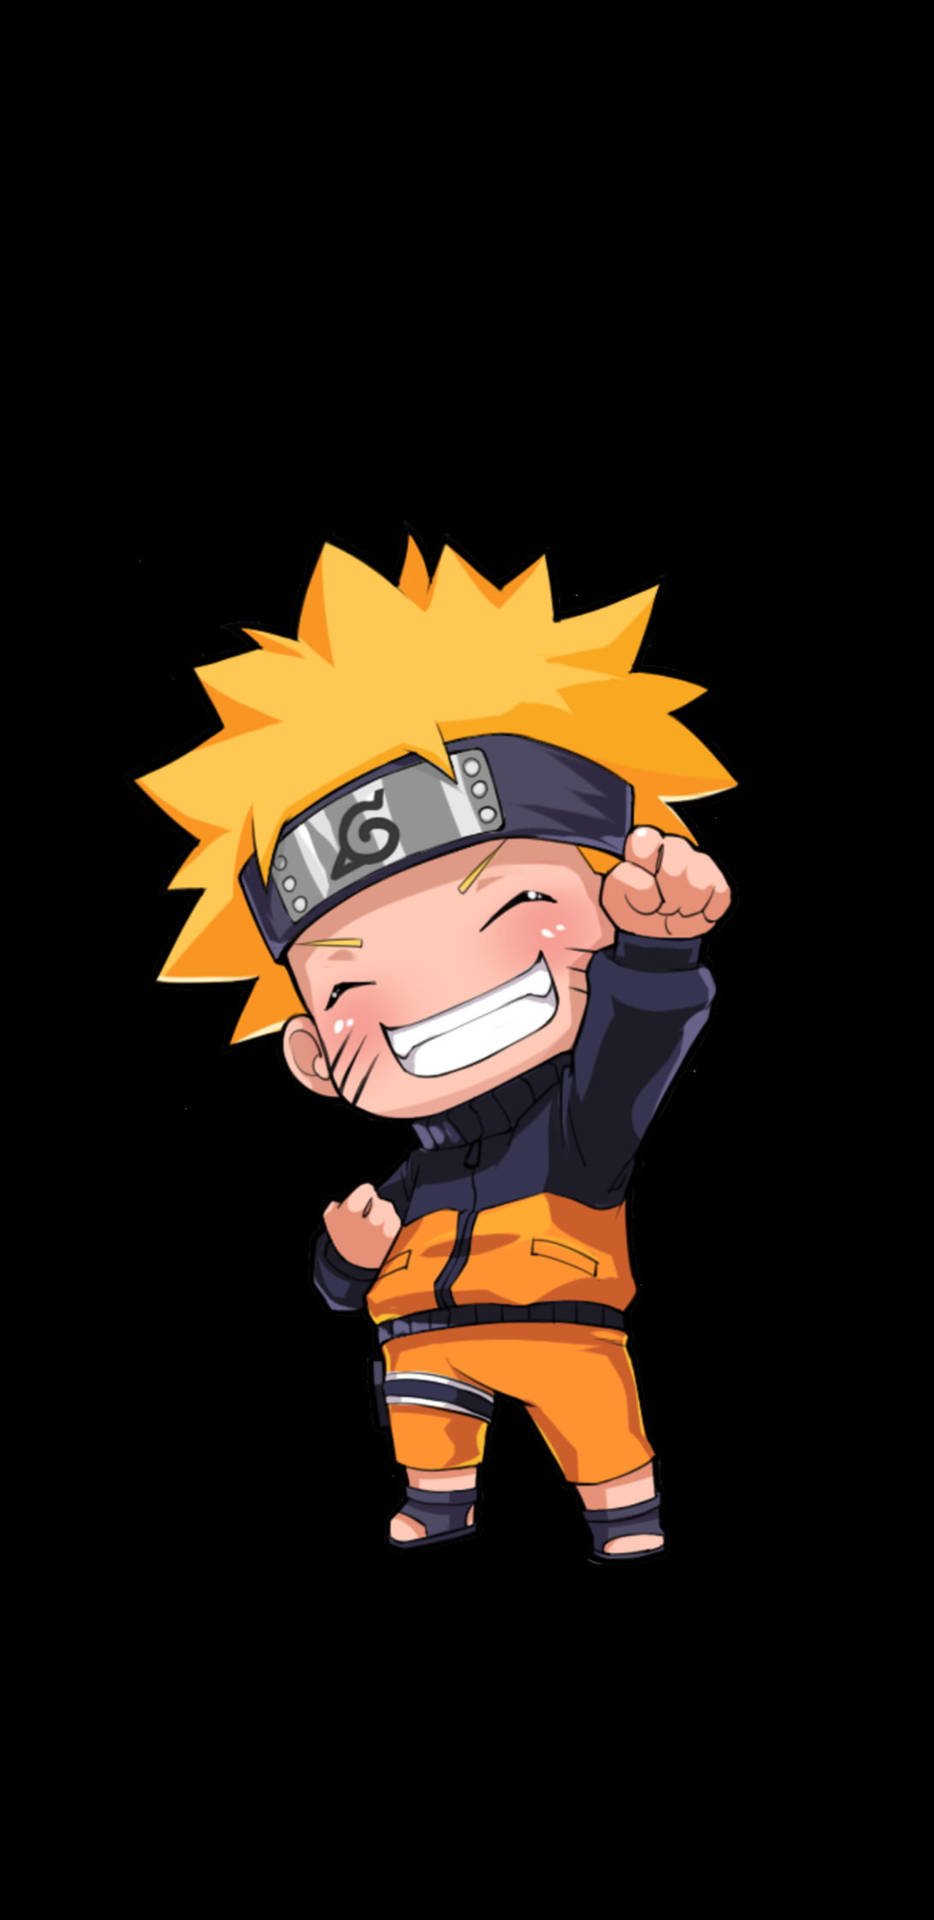 Tải ngay hình nền Cute Naruto 2k Amoled, chắc chắn bạn sẽ không thất vọng. Với chất lượng hình ảnh cực kỳ sắc nét, đặc biệt được tối ưu hóa độ sáng và tiết kiệm pin cho màn hình Amoled của bạn. Nhiều kích thước hình nền phù hợp với nhiều loại thiết bị, tải và cài đặt dễ dàng, hãy cảm nhận ngay!